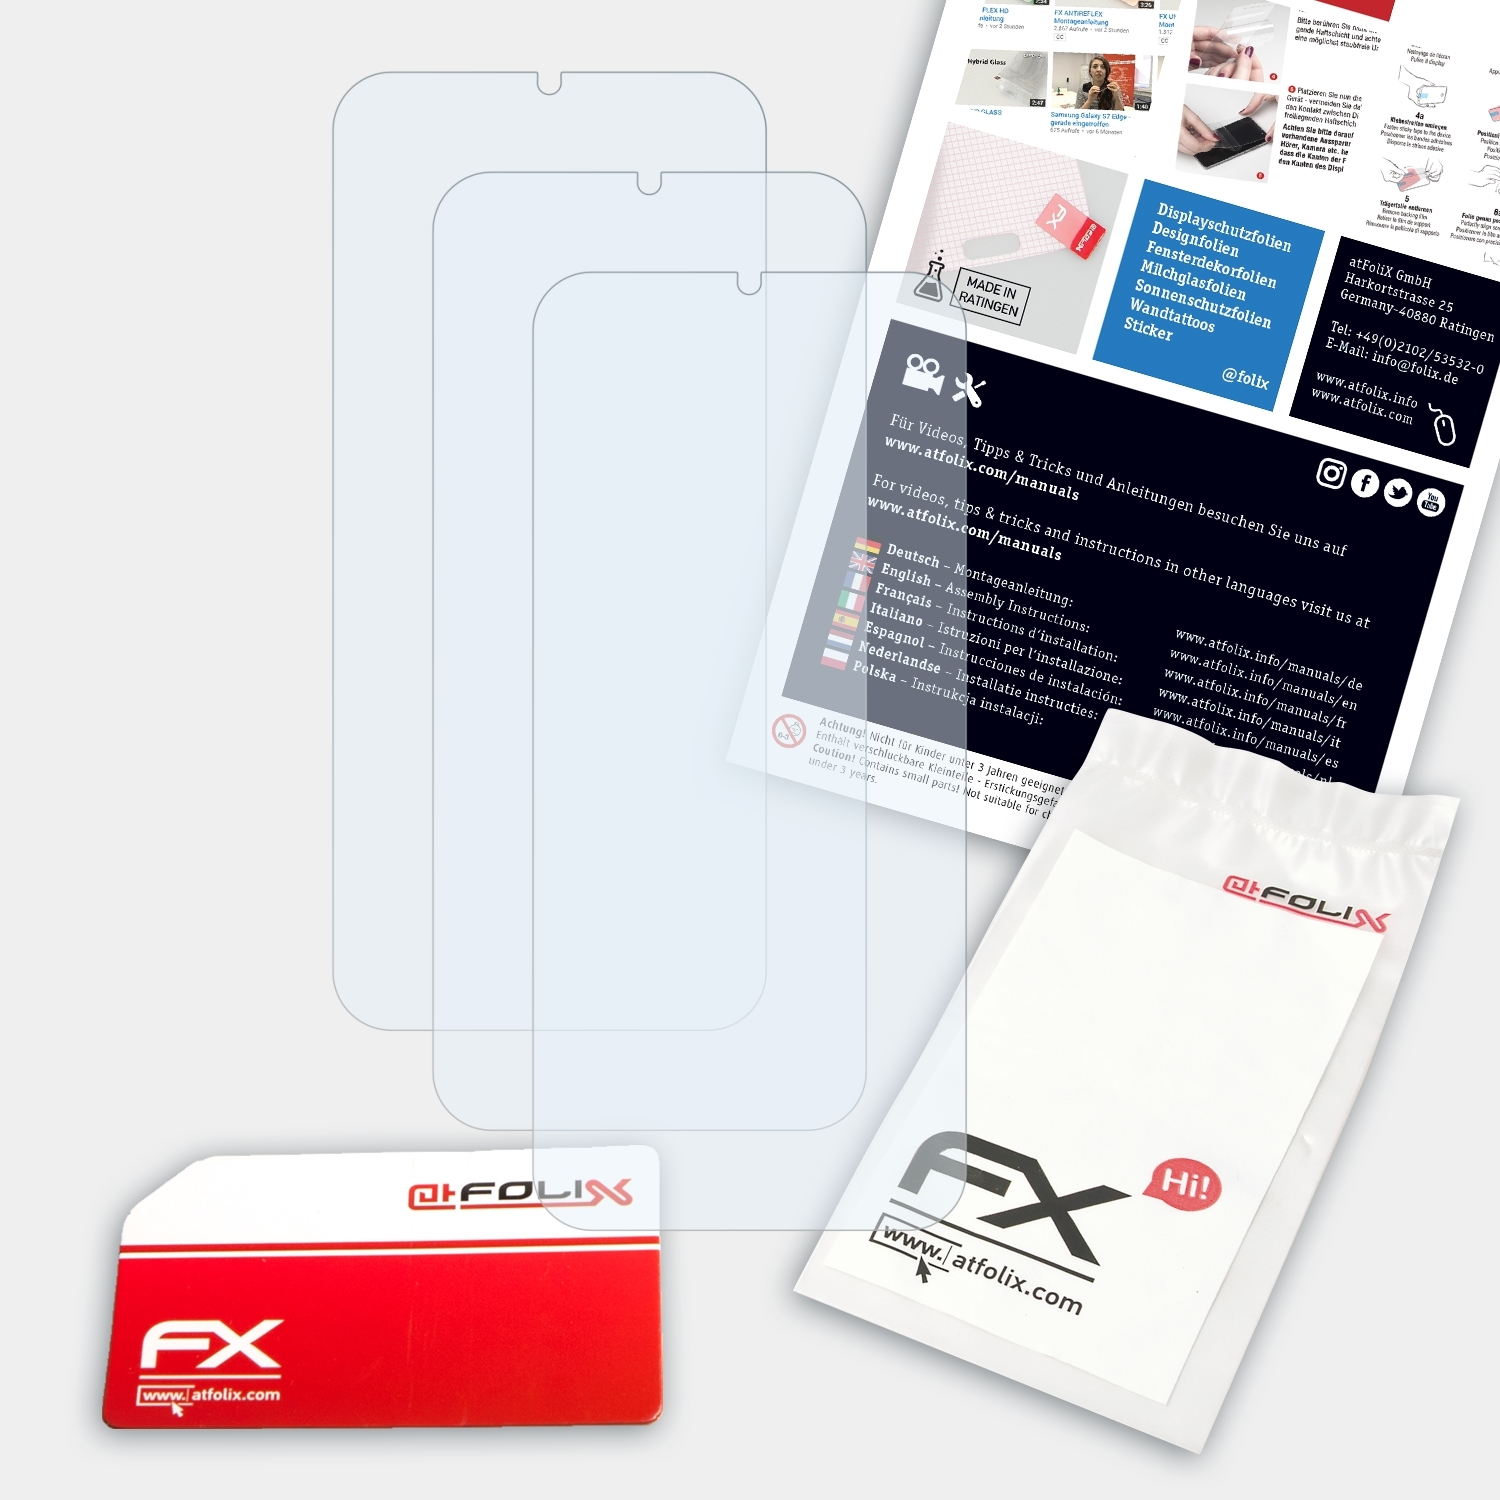 FX-Clear Displayschutz(für ATFOLIX 3x Lite 3) Huawei Nova